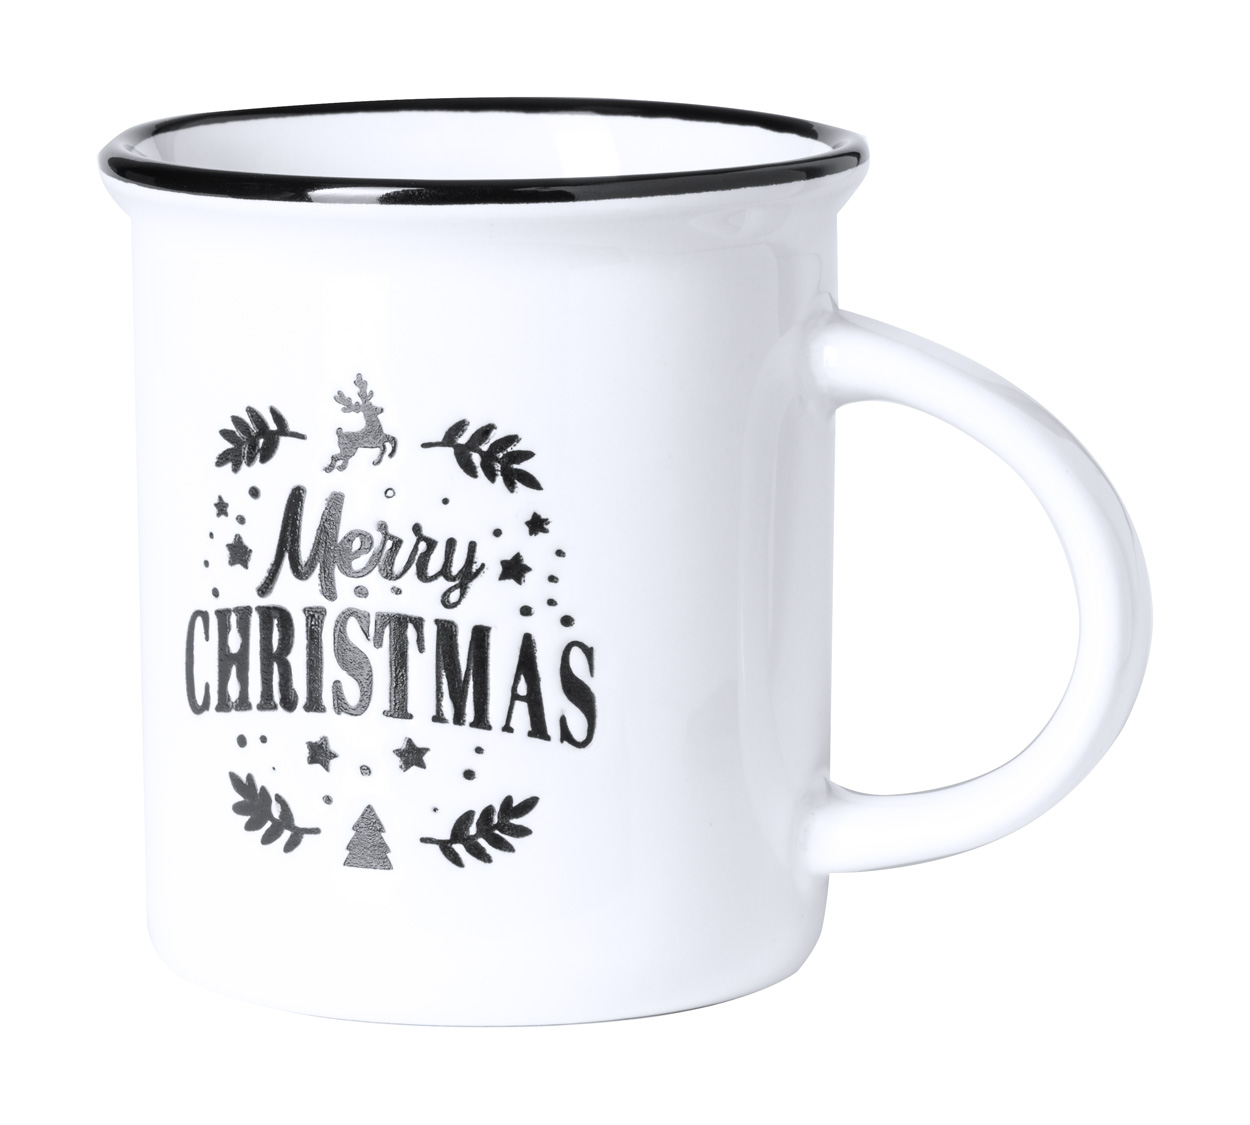 Tiffany Christmas mug - white